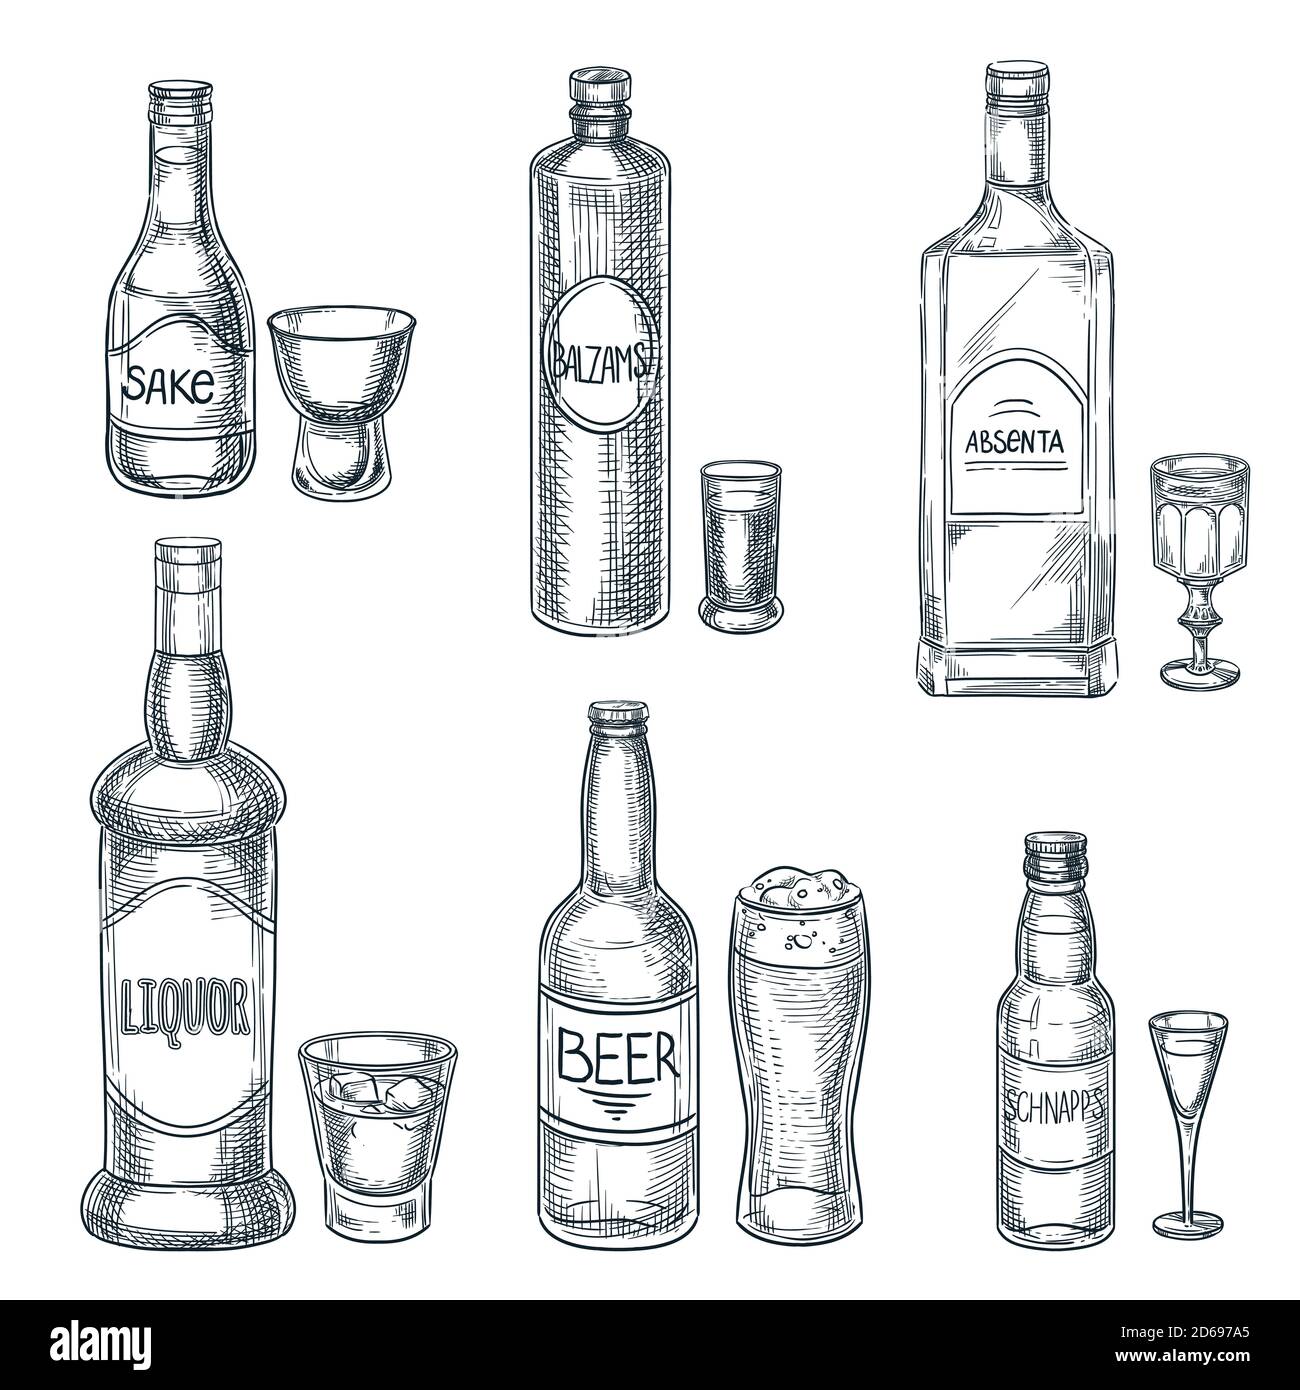 Bebidas alcohólicas botellas y vasos. Vector dibujo dibujado a mano ilustración aislada. Elementos de diseño del menú de barras. Licor, cerveza y sake de estilo vintage Ilustración del Vector